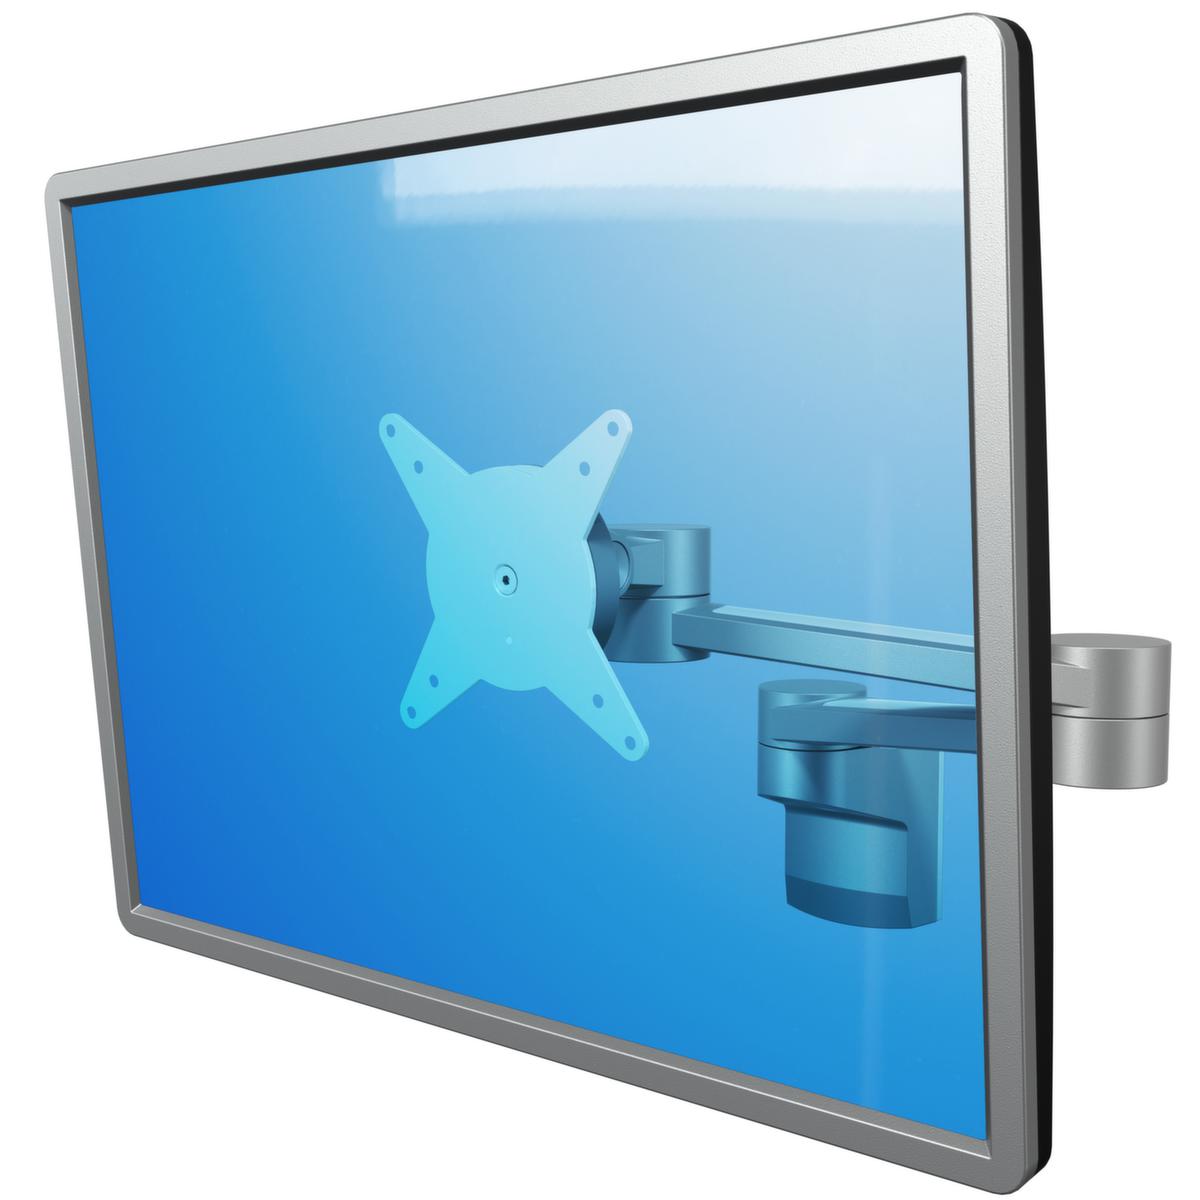 In diepte verstelbare monitorarm voor ViewLite wandmontage  ZOOM